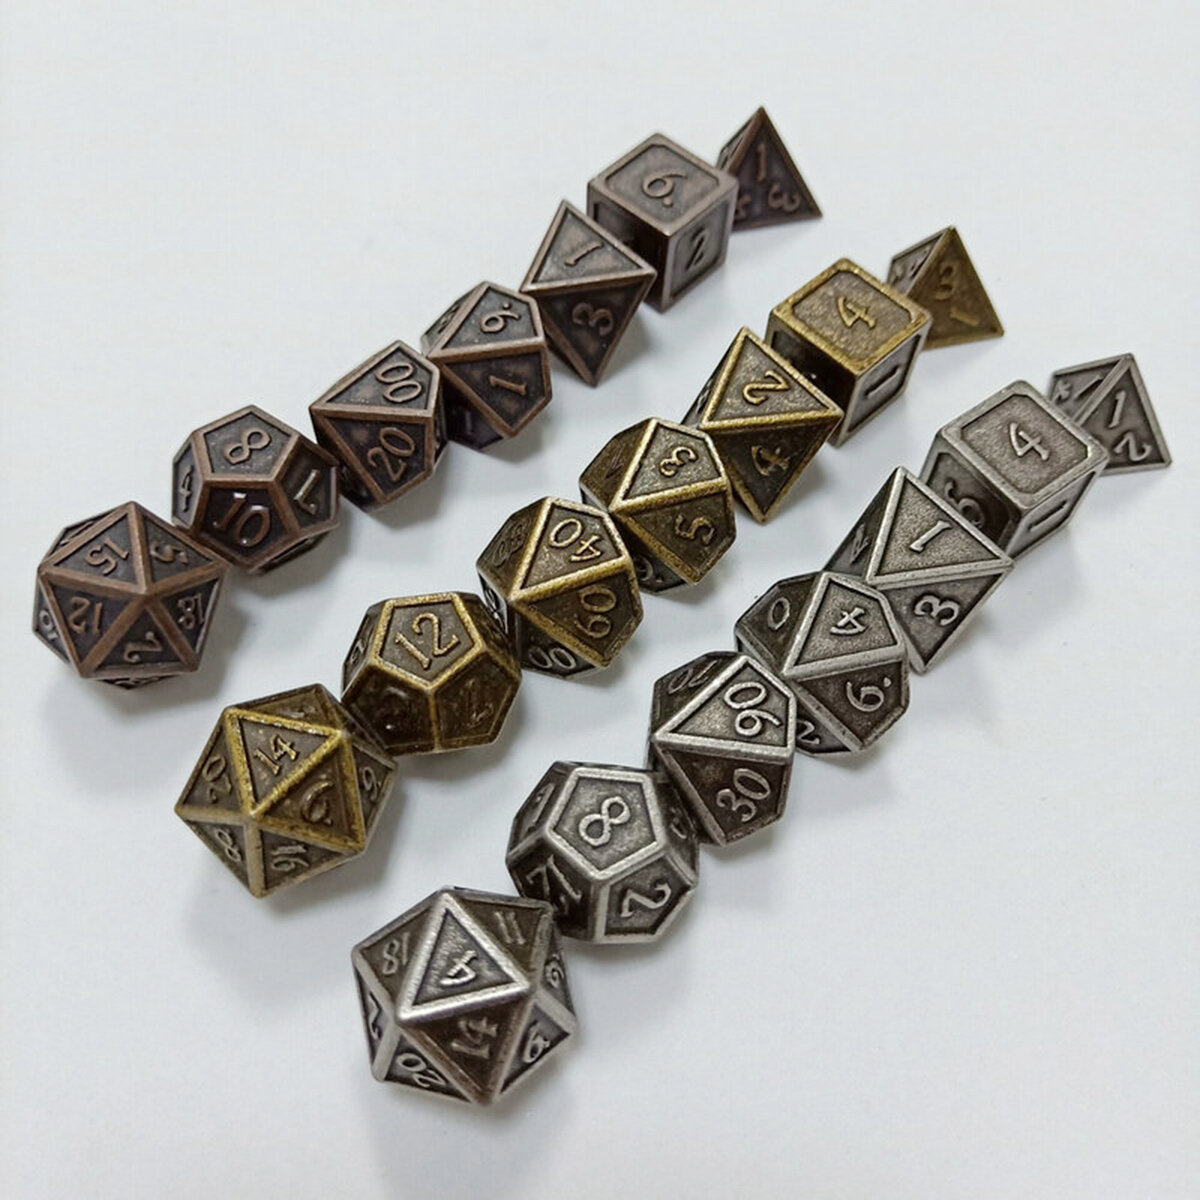 7-delige metalen polyedrische dobbelstenen DnD RPG TRPG-games dobbelstenen SET met opbergtas